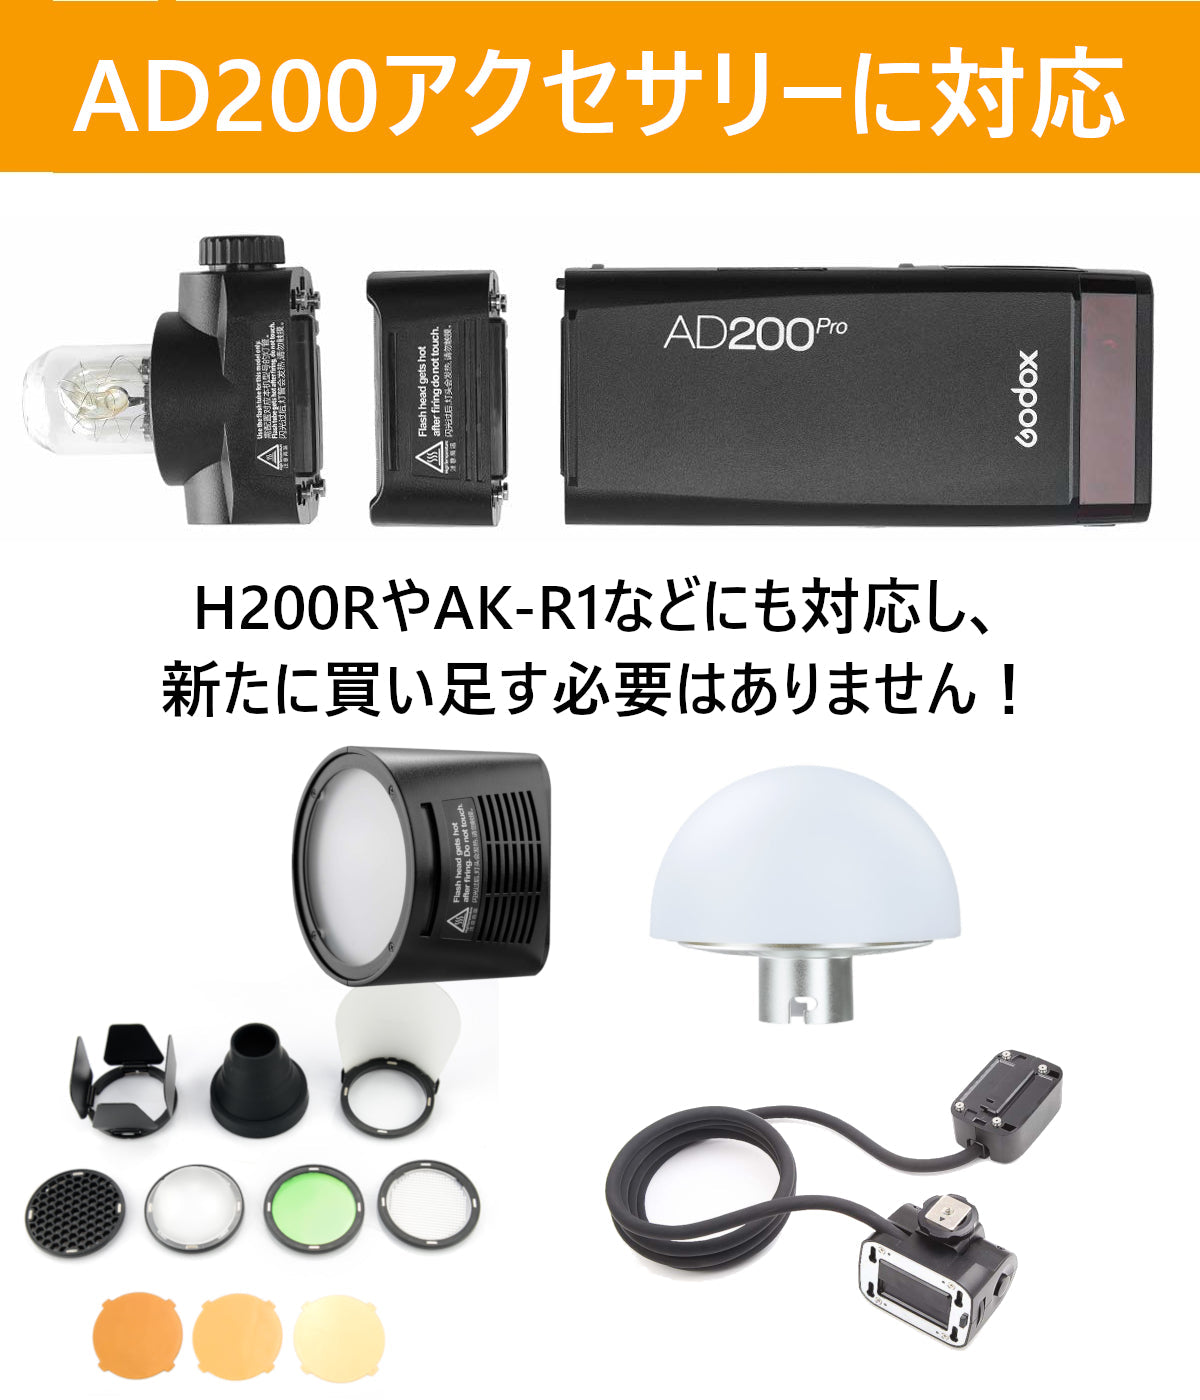 Godox AD200Pro ポケット TTL スピードライト フラッシュ ポータブル ミニ GN52 GN60 1/8000s HSS 2.4Gワイヤレス Xシステム 200Ws強力パワー